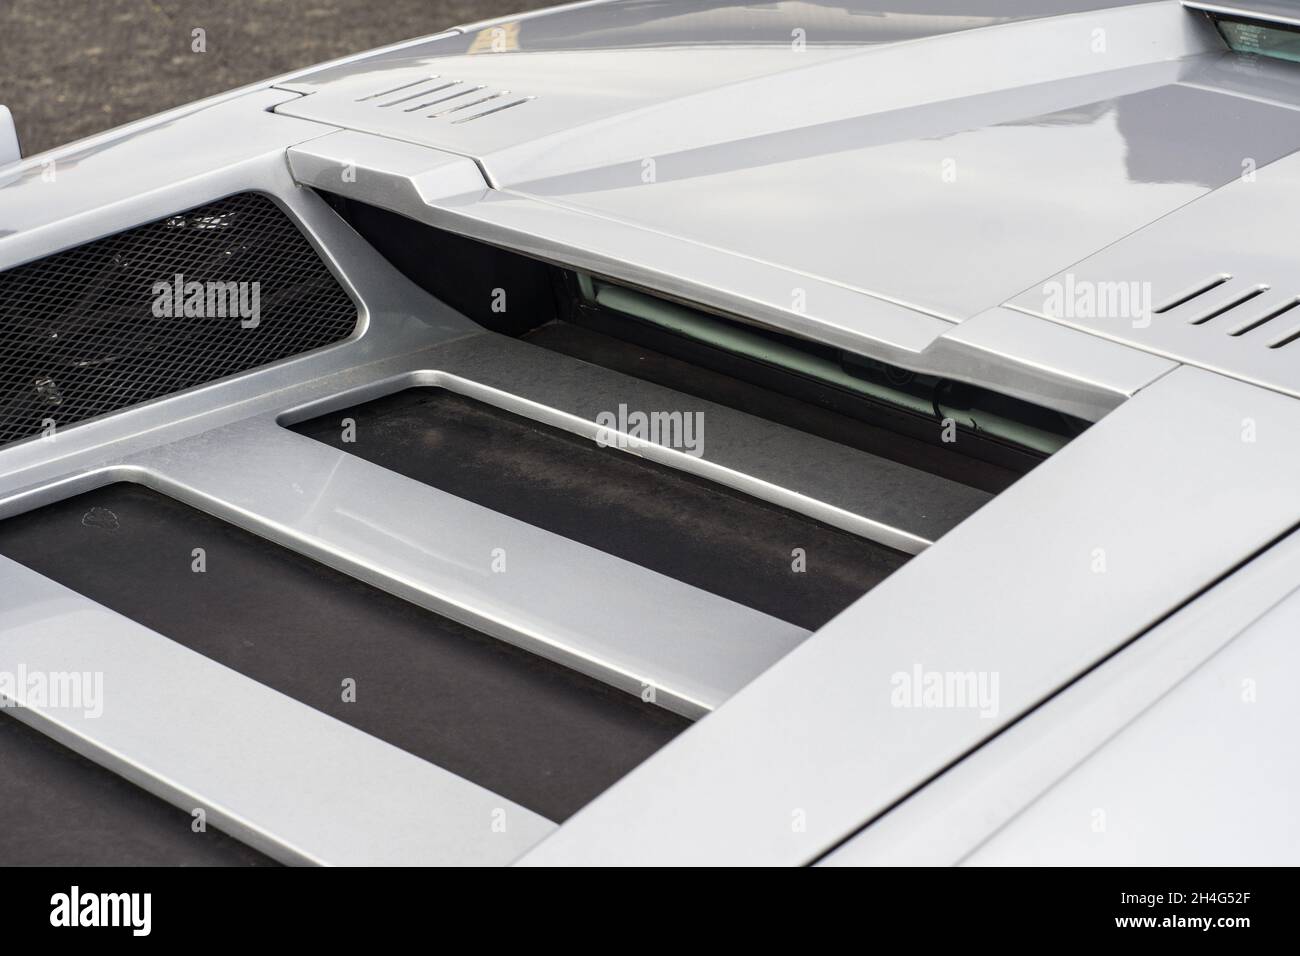 Gros plan sur les panneaux de toit d'une voiture de sport Lamborghini Countach LP400 argentée Banque D'Images